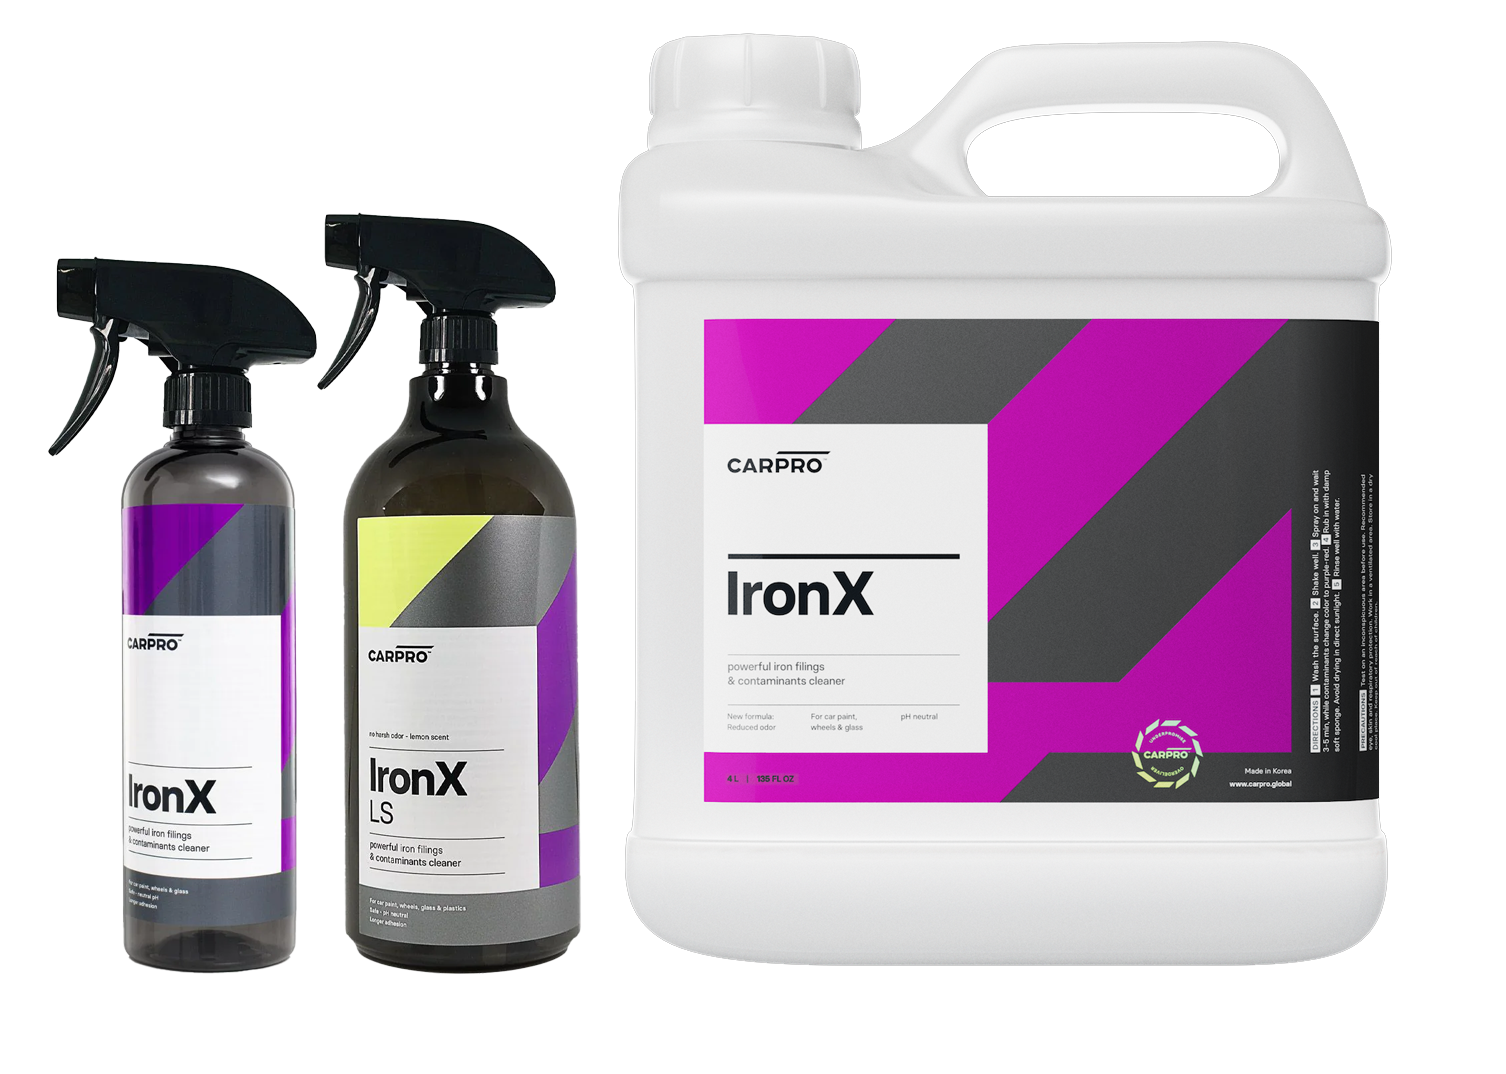 CarPro Iron X Iron Remover 500 ml. Spray - Auto Detailing